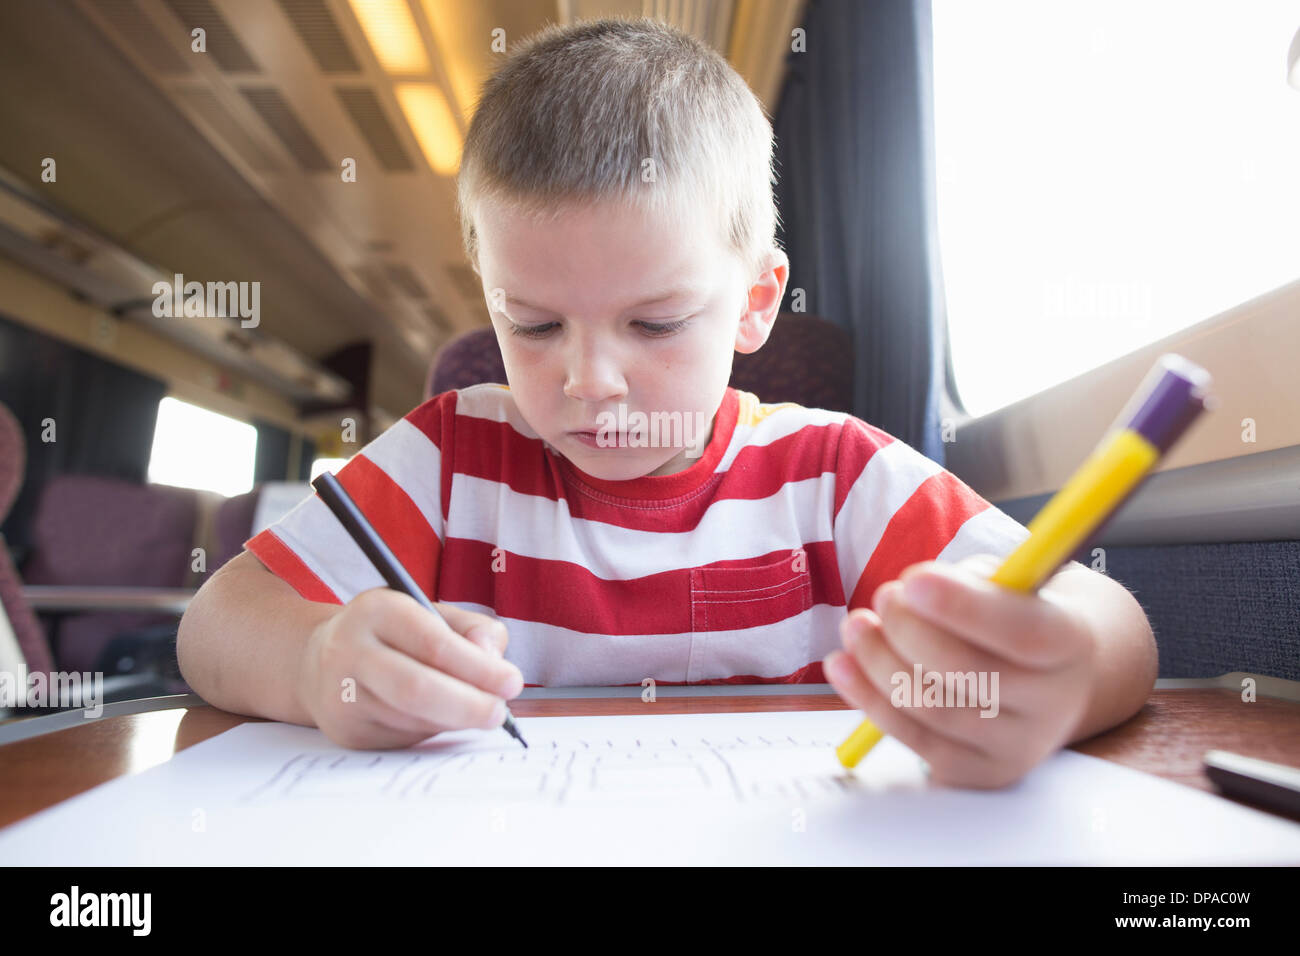 Jeune garçon avec un crayon, un stylo et du papier sur le train Banque D'Images